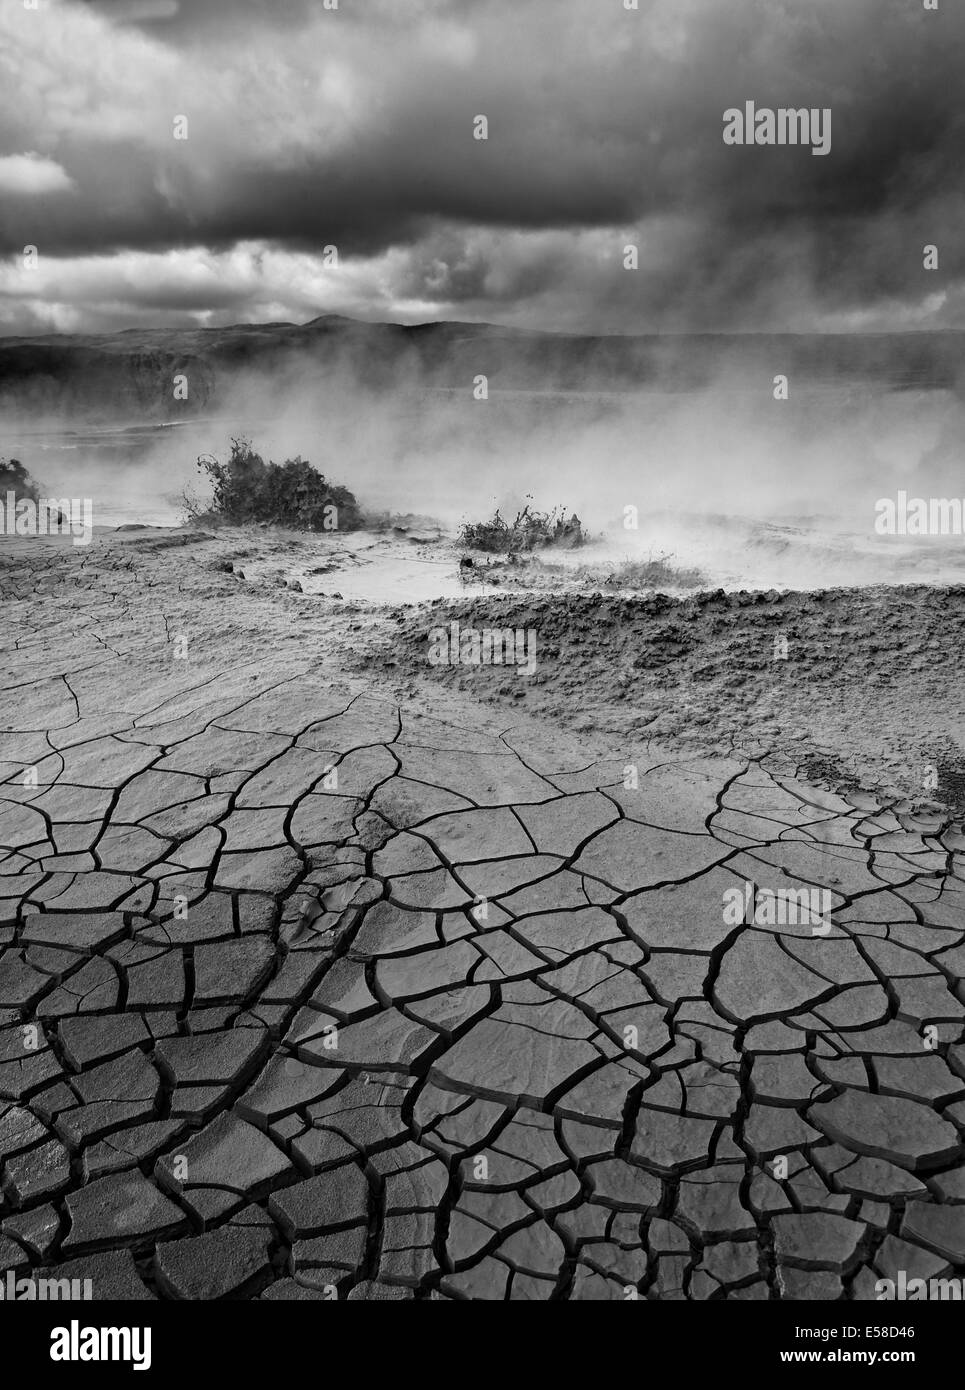 La terre craquelée et boue, source d'eau chaude géothermique, Hveragerdi, Islande Banque D'Images